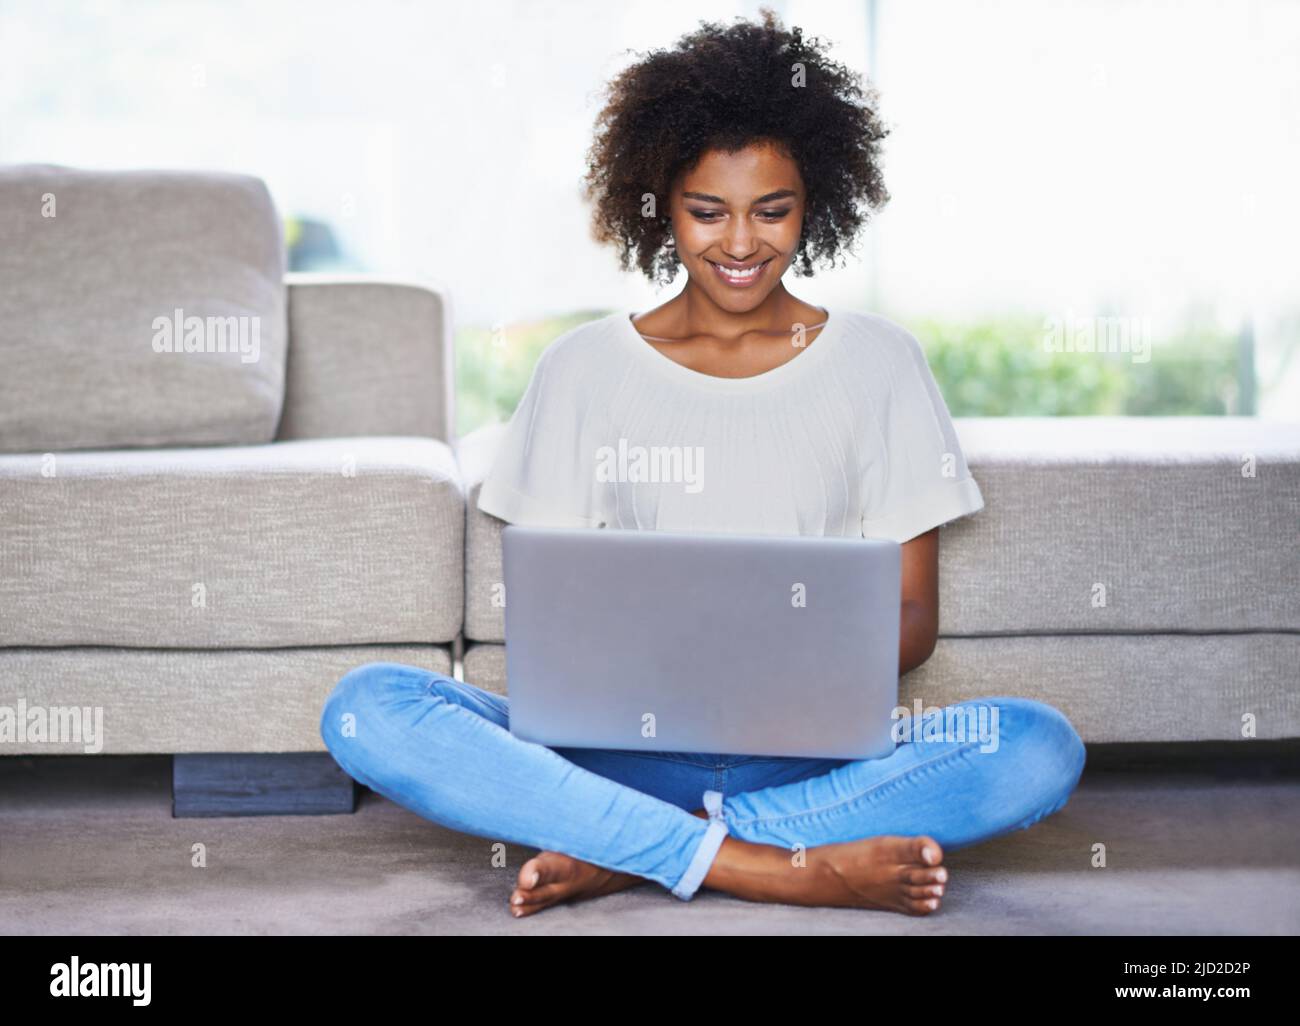 Es ist heutzutage einfach, in Verbindung zu bleiben. Aufnahme einer jungen Frau, die einen Laptop benutzt, während sie sich zu Hause entspannt. Stockfoto